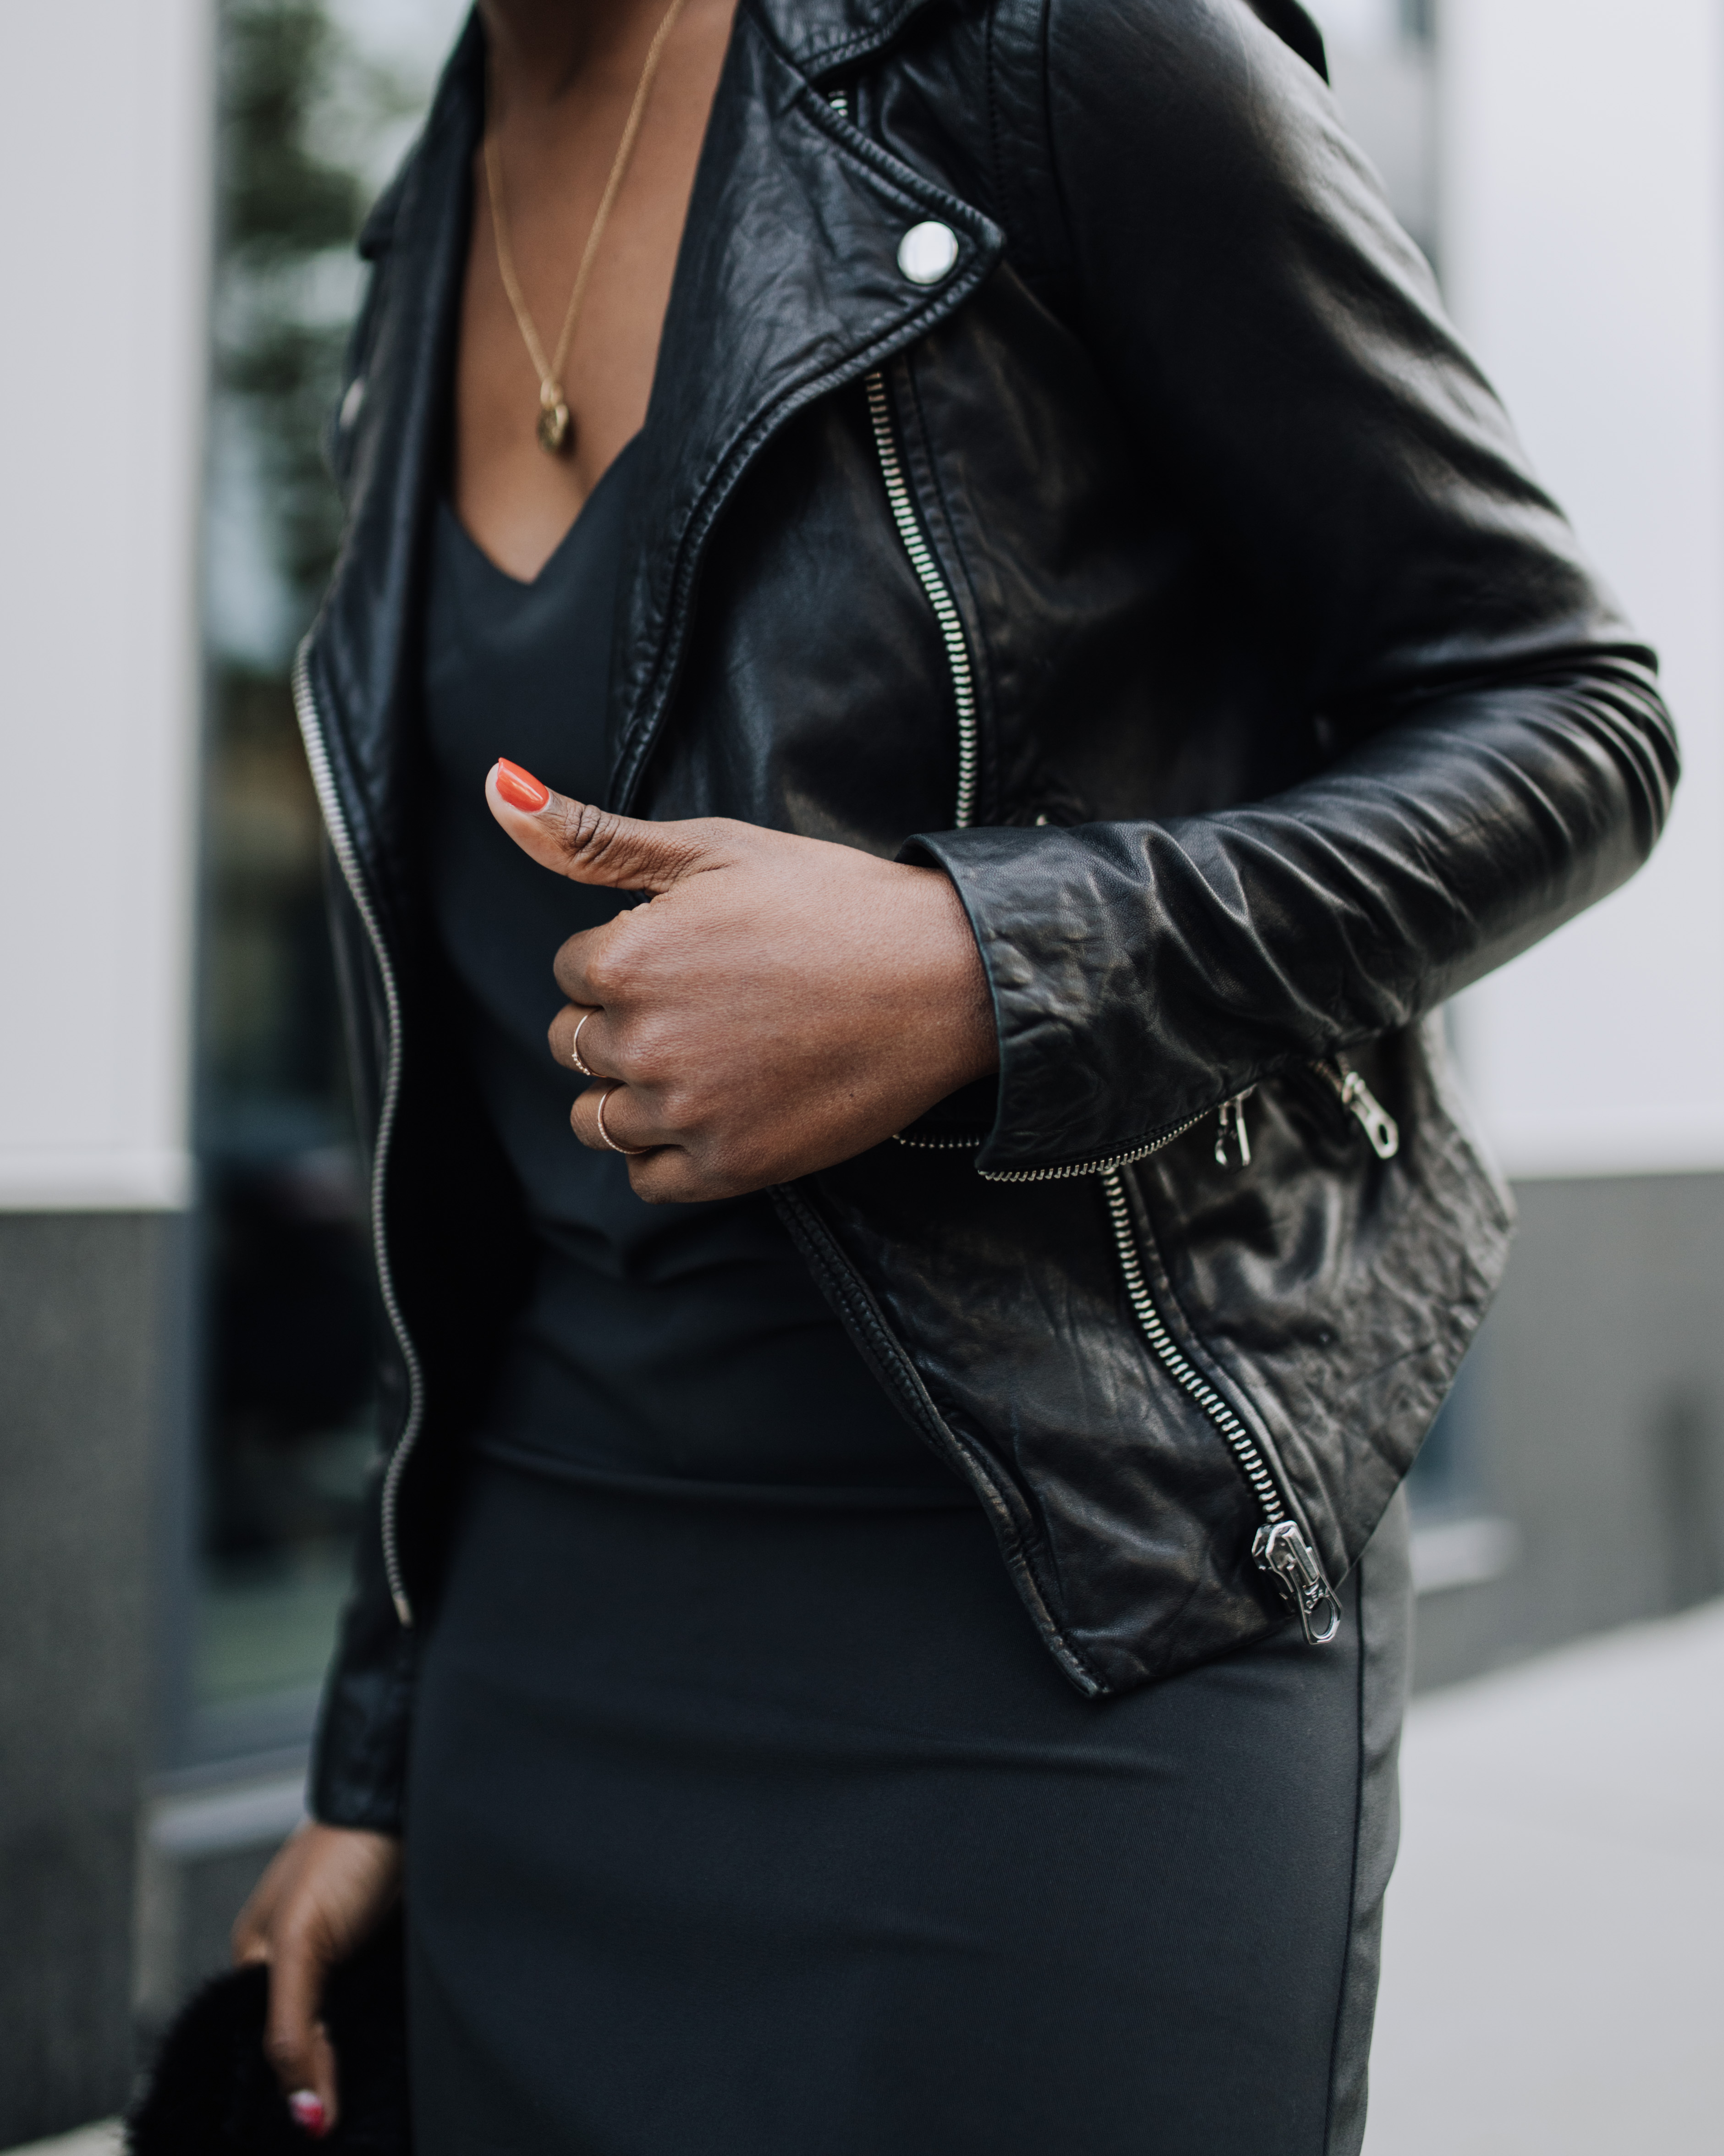 Slip Dress with Leather Moto Jacket